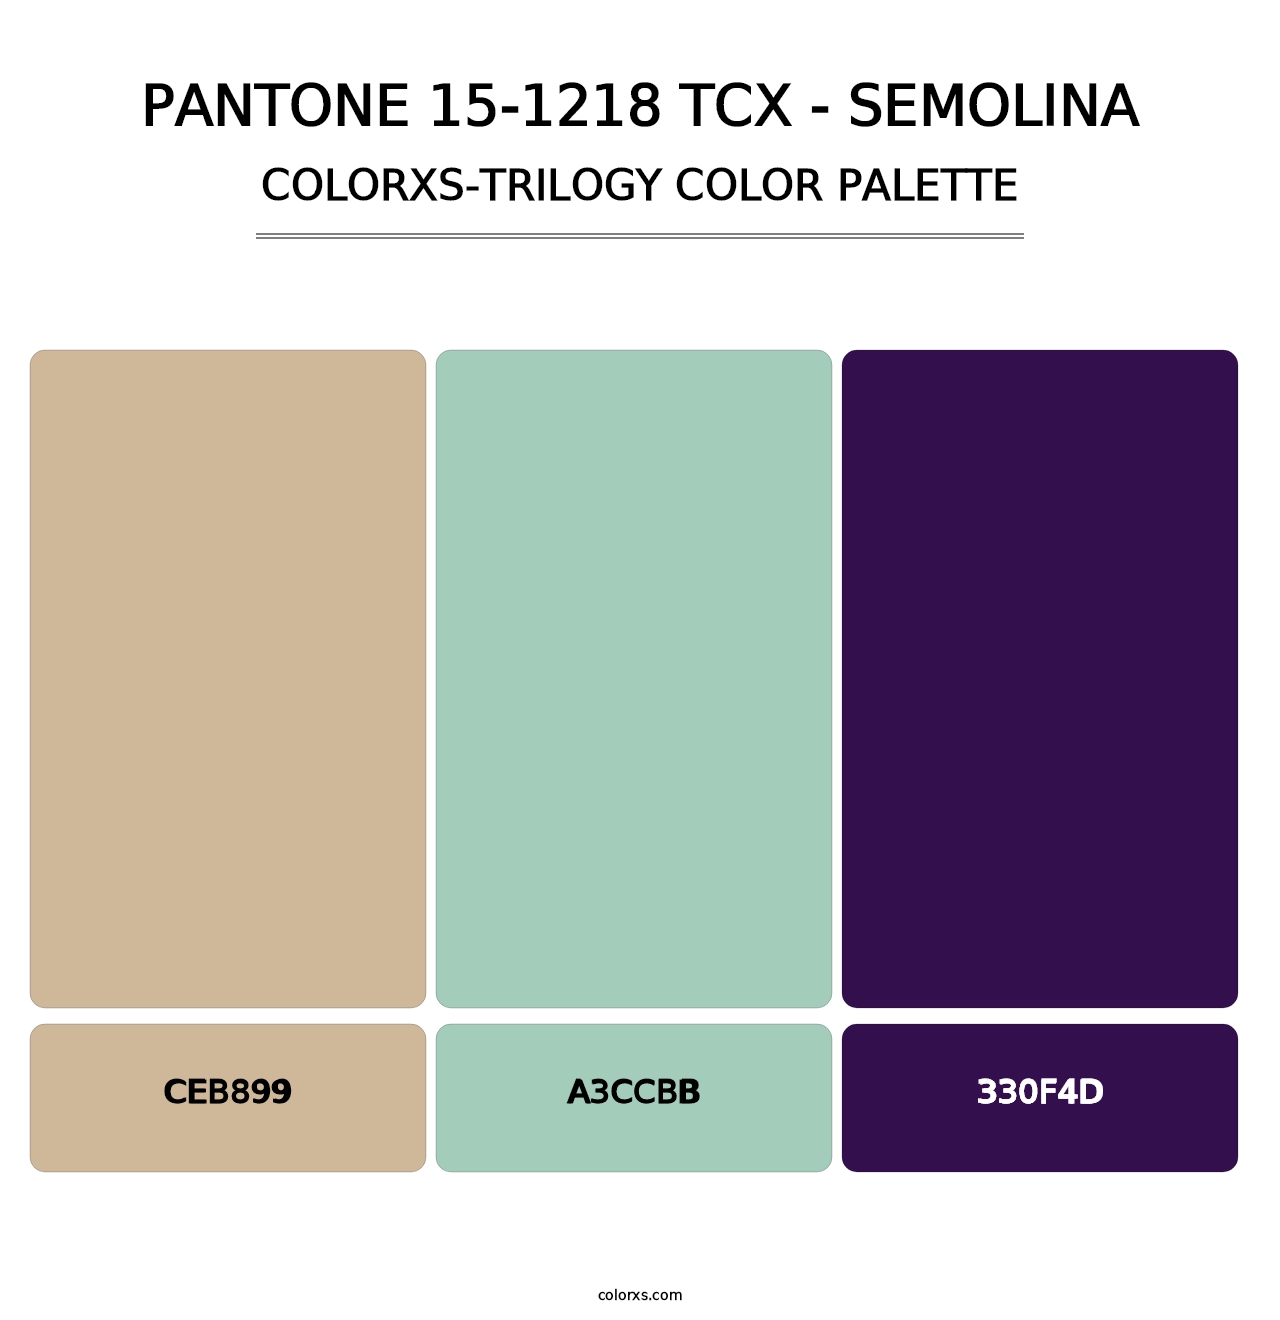 PANTONE 15-1218 TCX - Semolina - Colorxs Trilogy Palette